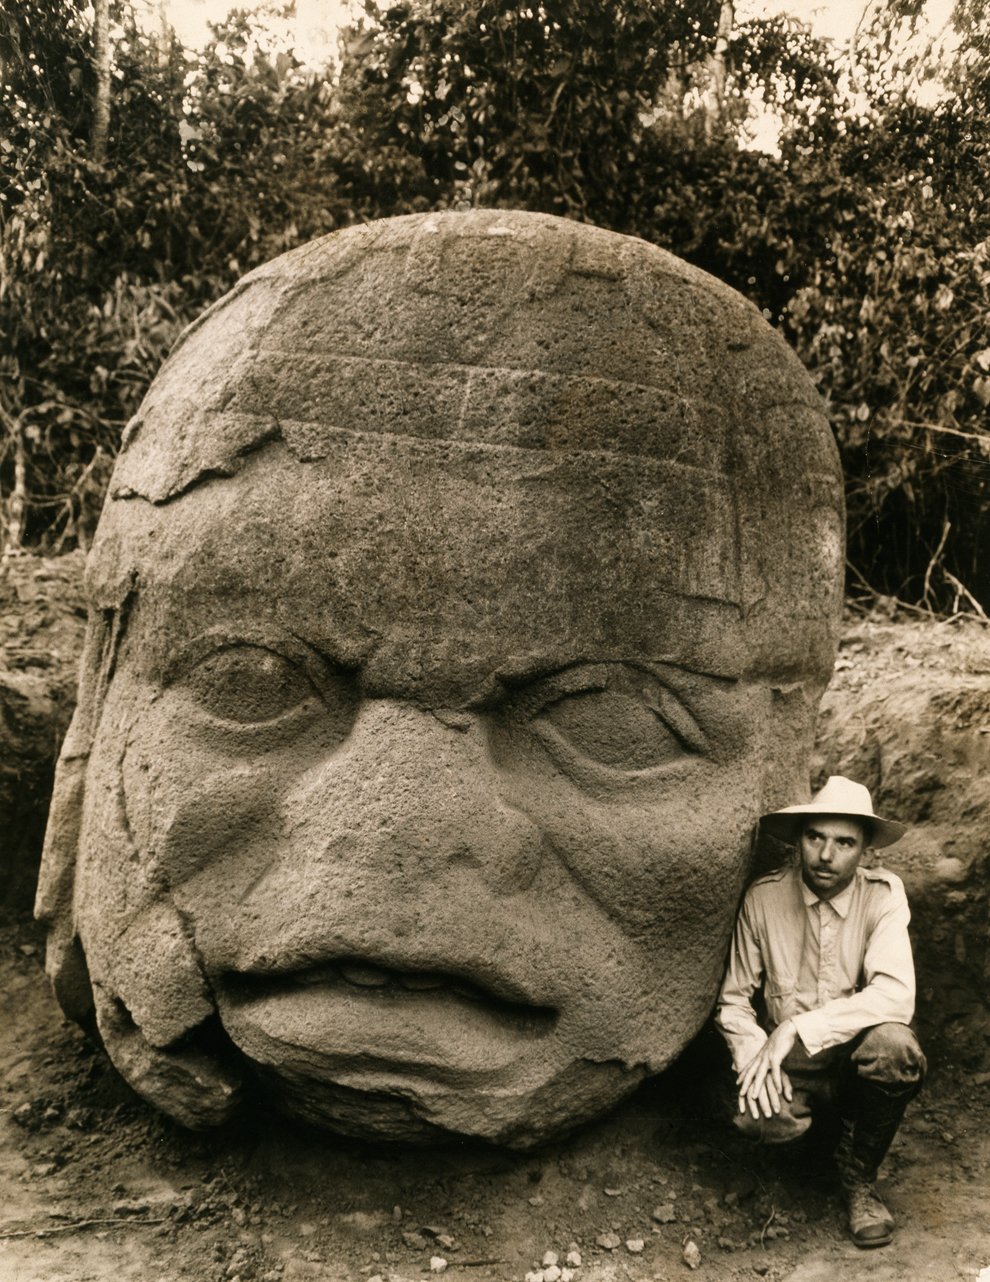 Во время экспедиции в мексиканский штат Веракрус были найдены колоссальные каменные головы, свидетельствующие о древней цивилизации ольмеков